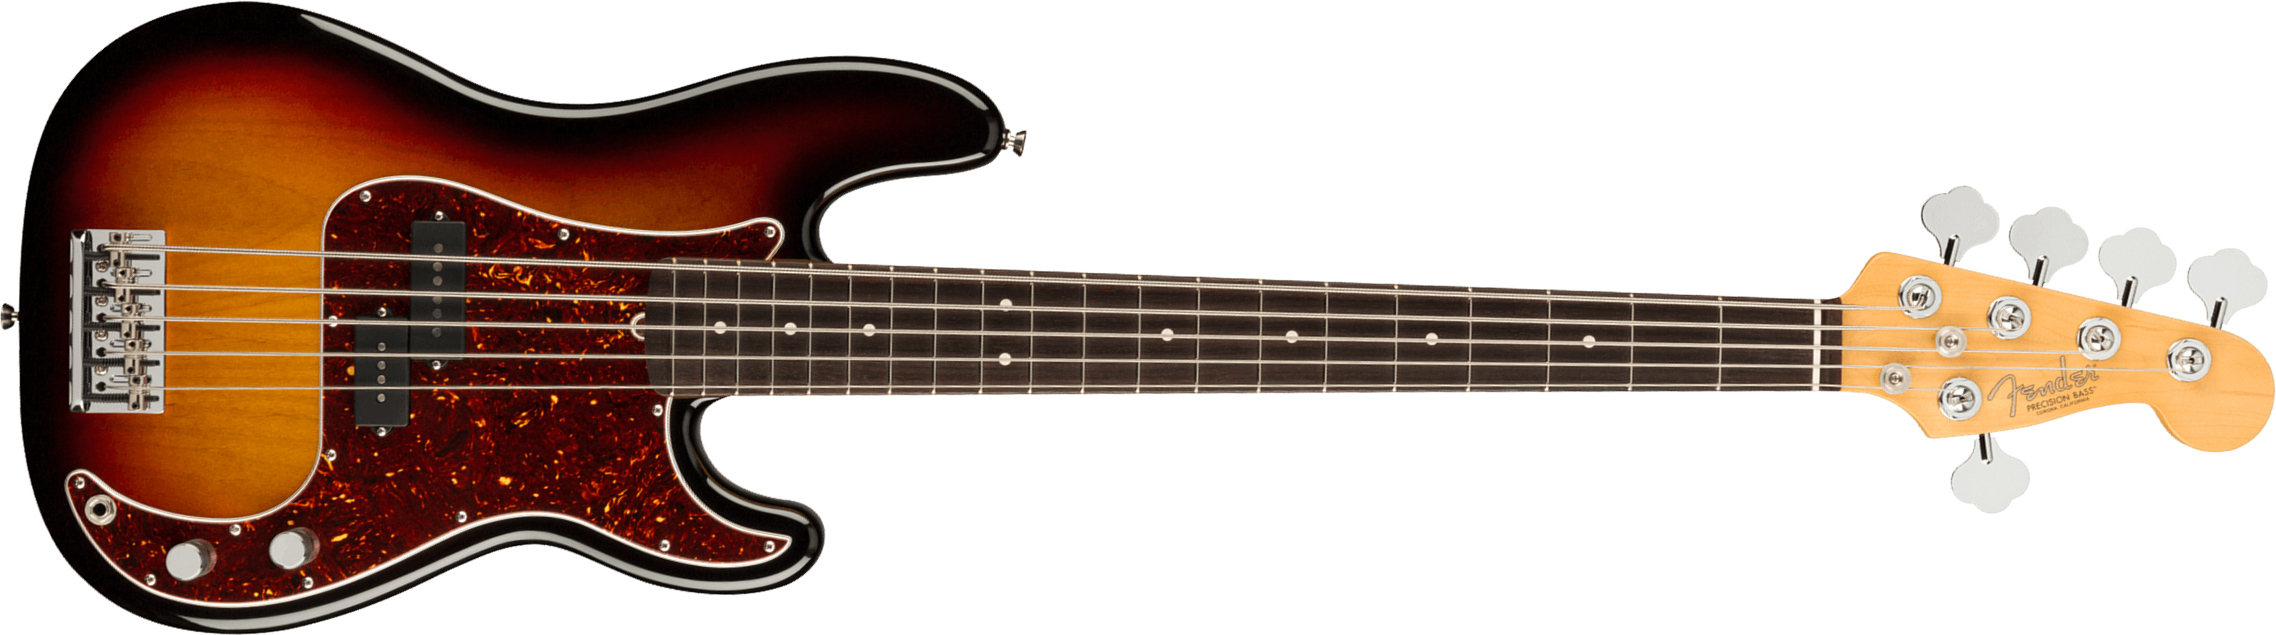 Fender Precision Bass V American Professional Ii Usa 5-cordes Rw - 3-color Sunburst - Solid body elektrische bas - Main picture